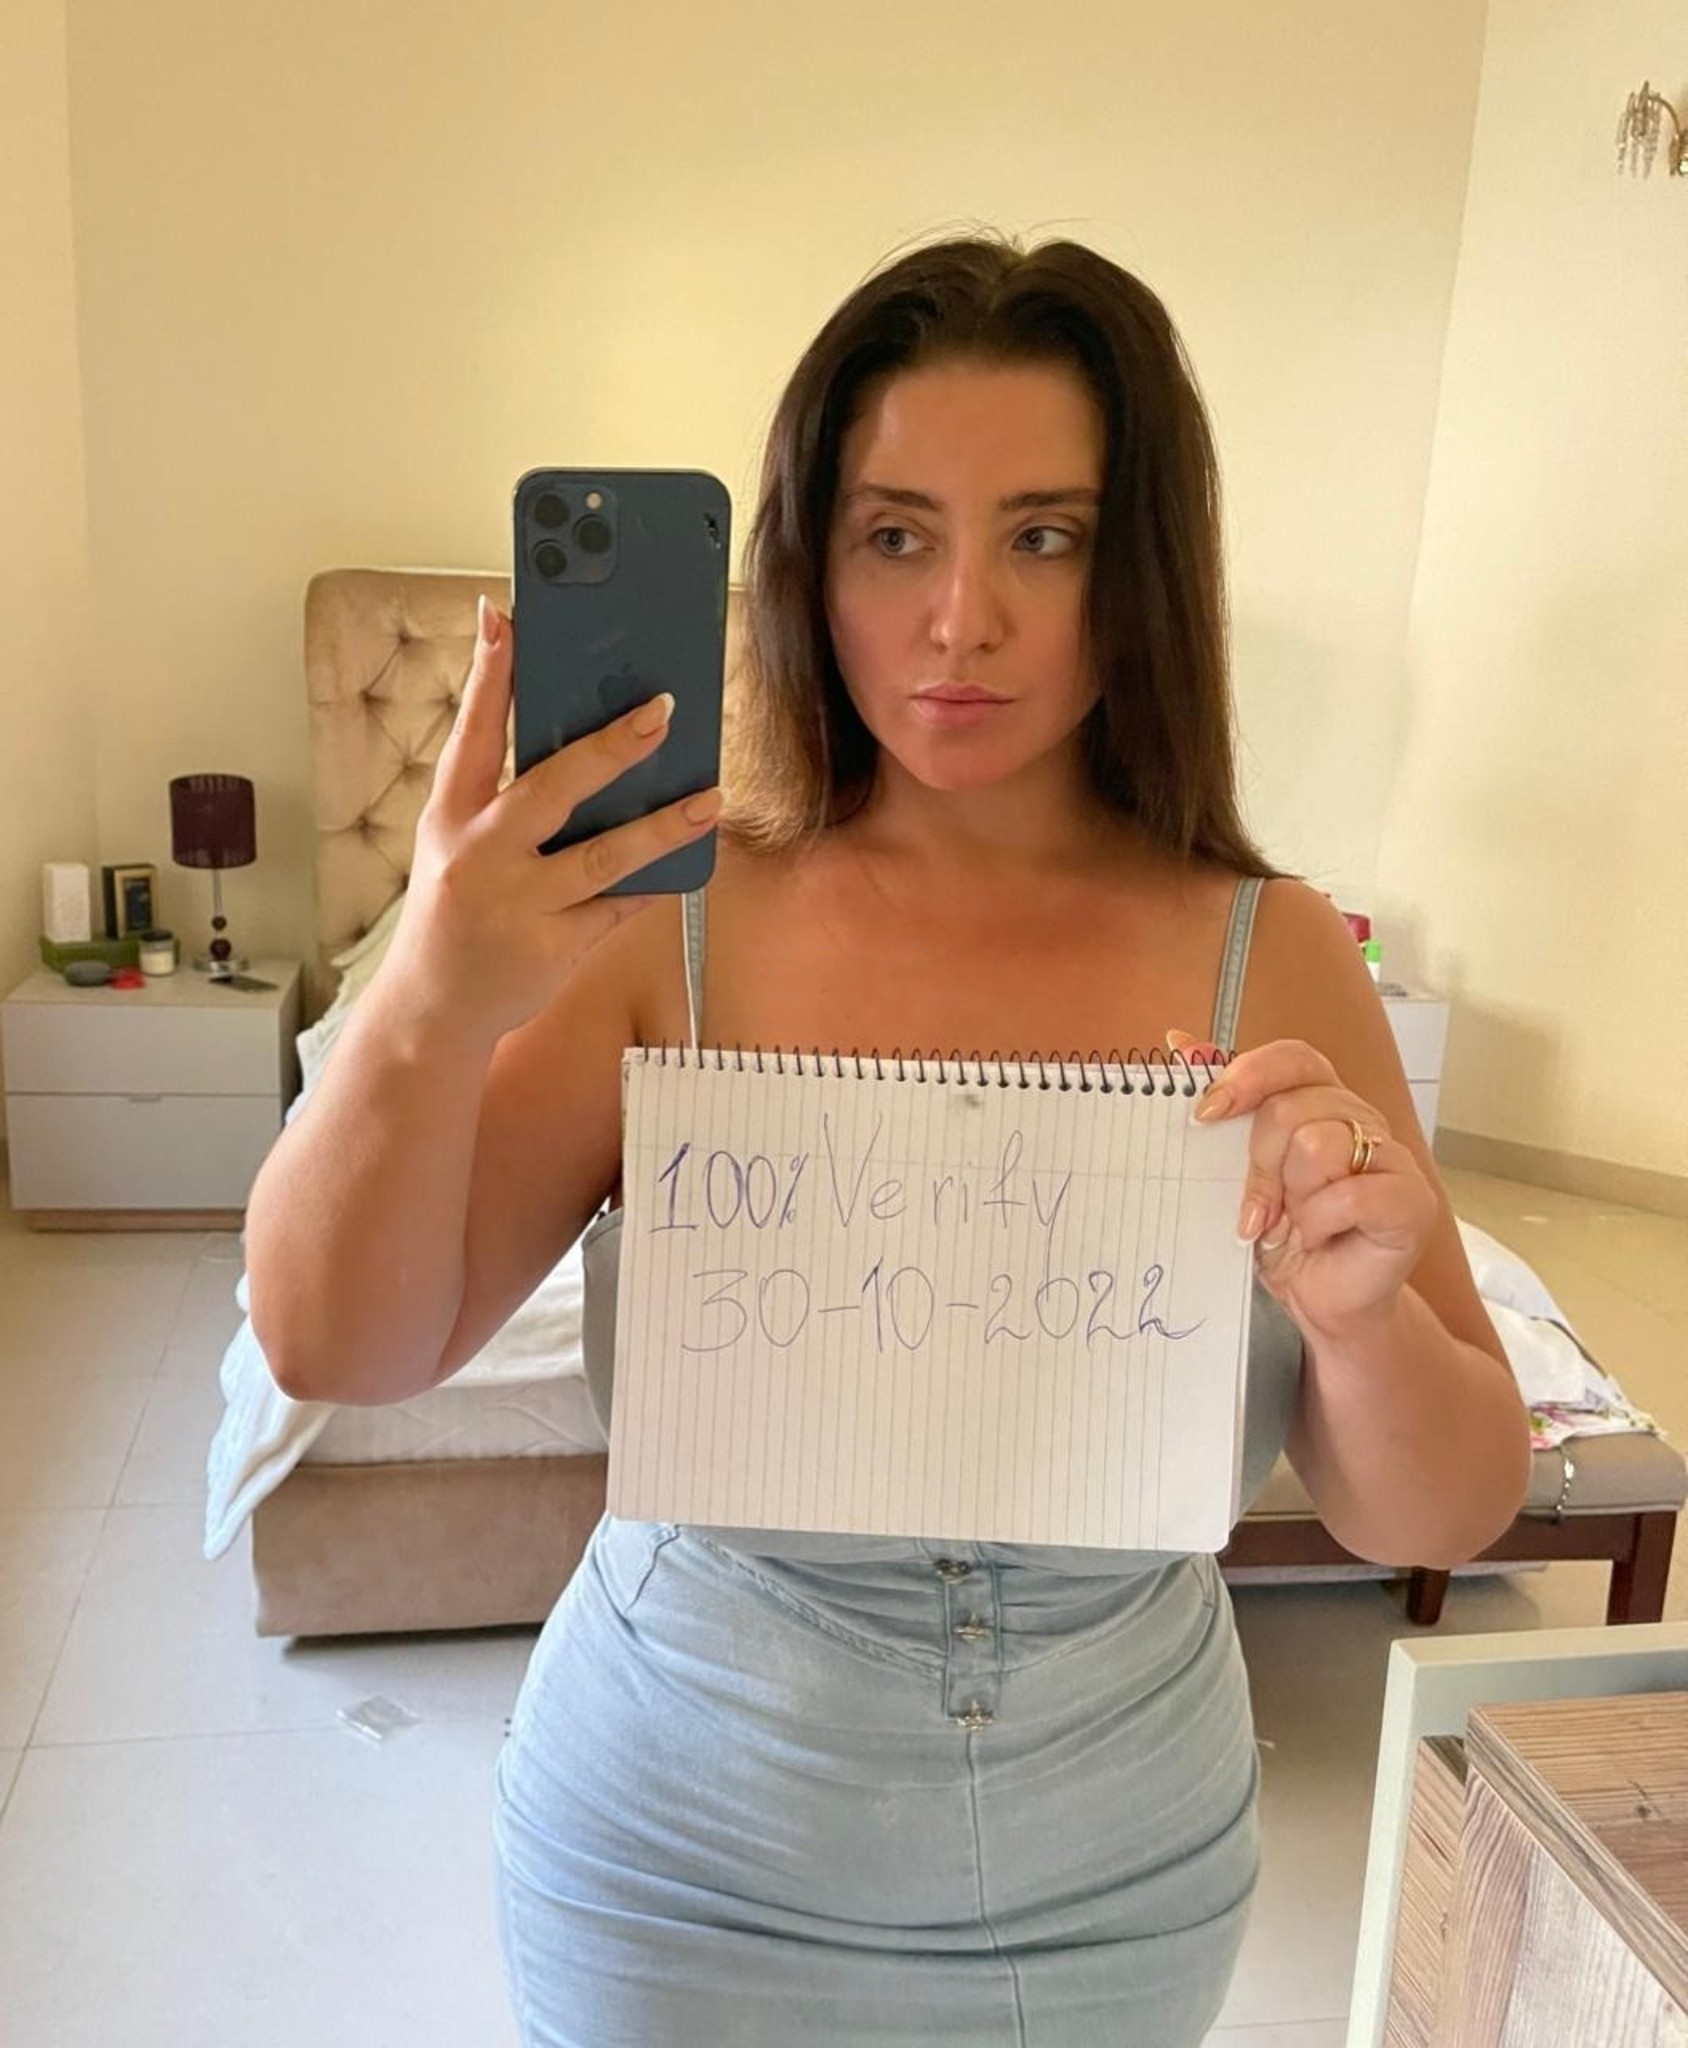 לולה- נערה ישראלית אוקראינית לביתך או למלון – קריות